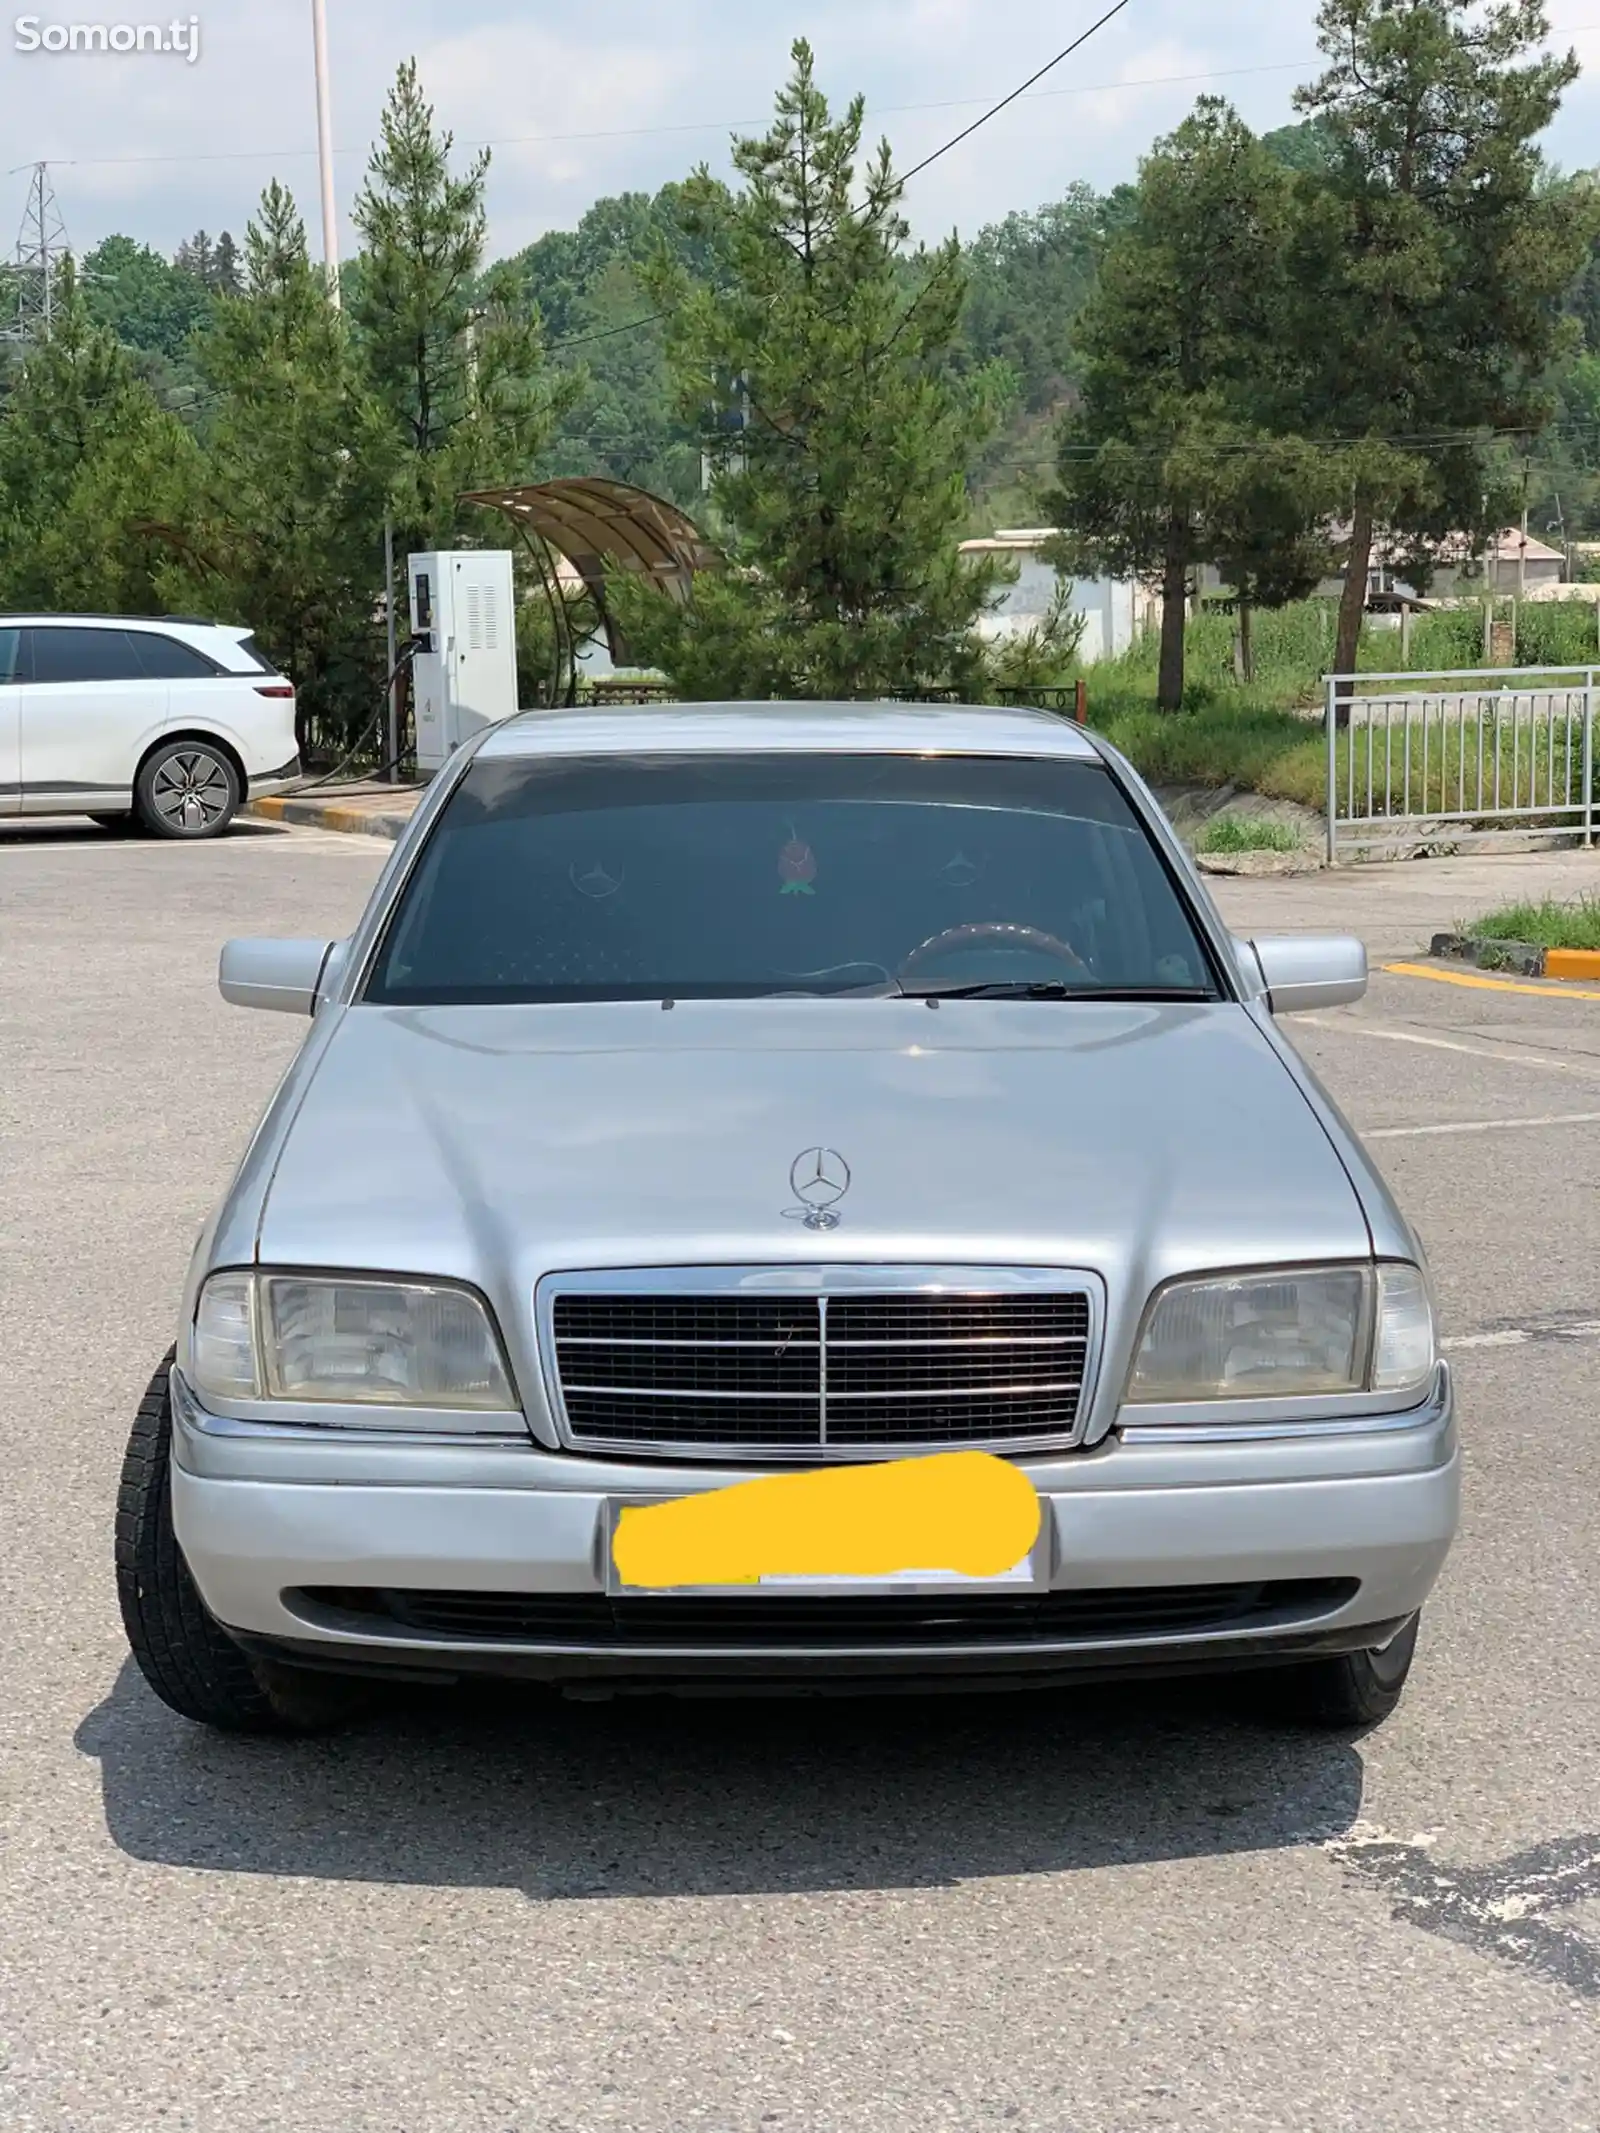 Mercedes-Benz C class, 1995-1